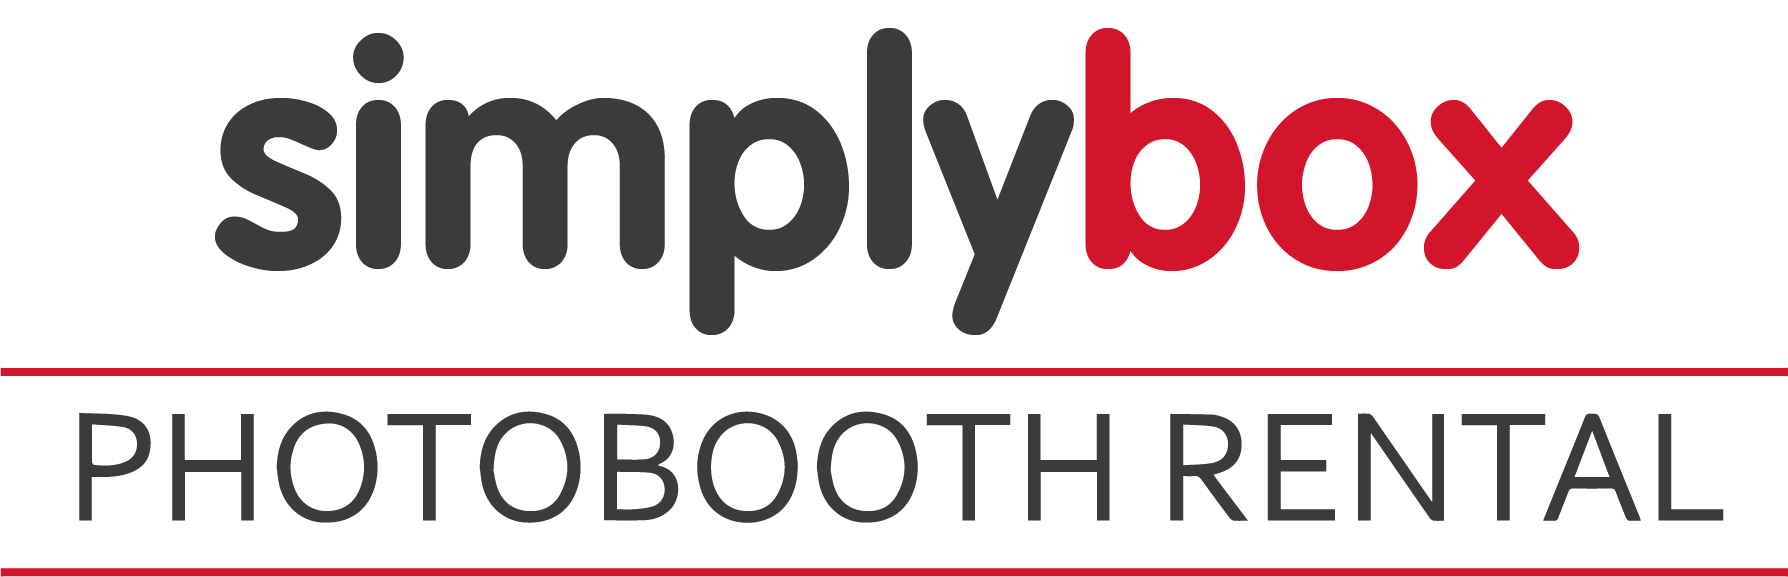 Simplybox - Locatie Photobooth - Huur een photobooth voor uw event